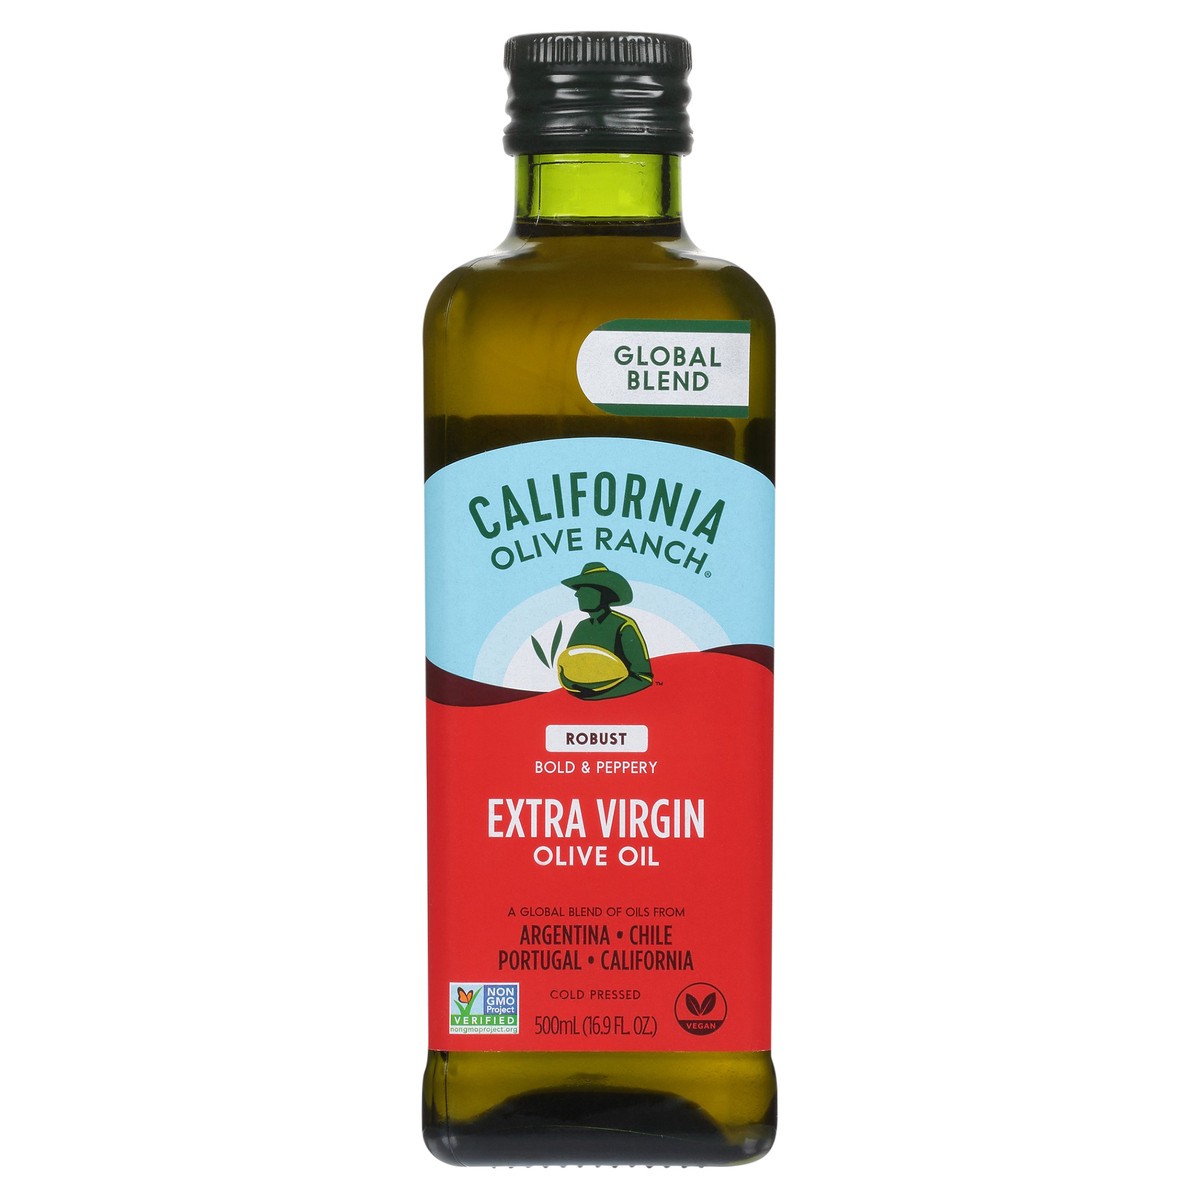 slide 1 of 14, California Olive Ranch Global Blend Robust Extra Virgin Olive Oil 16.9 fl. oz. Bottle, 16.9 fl oz